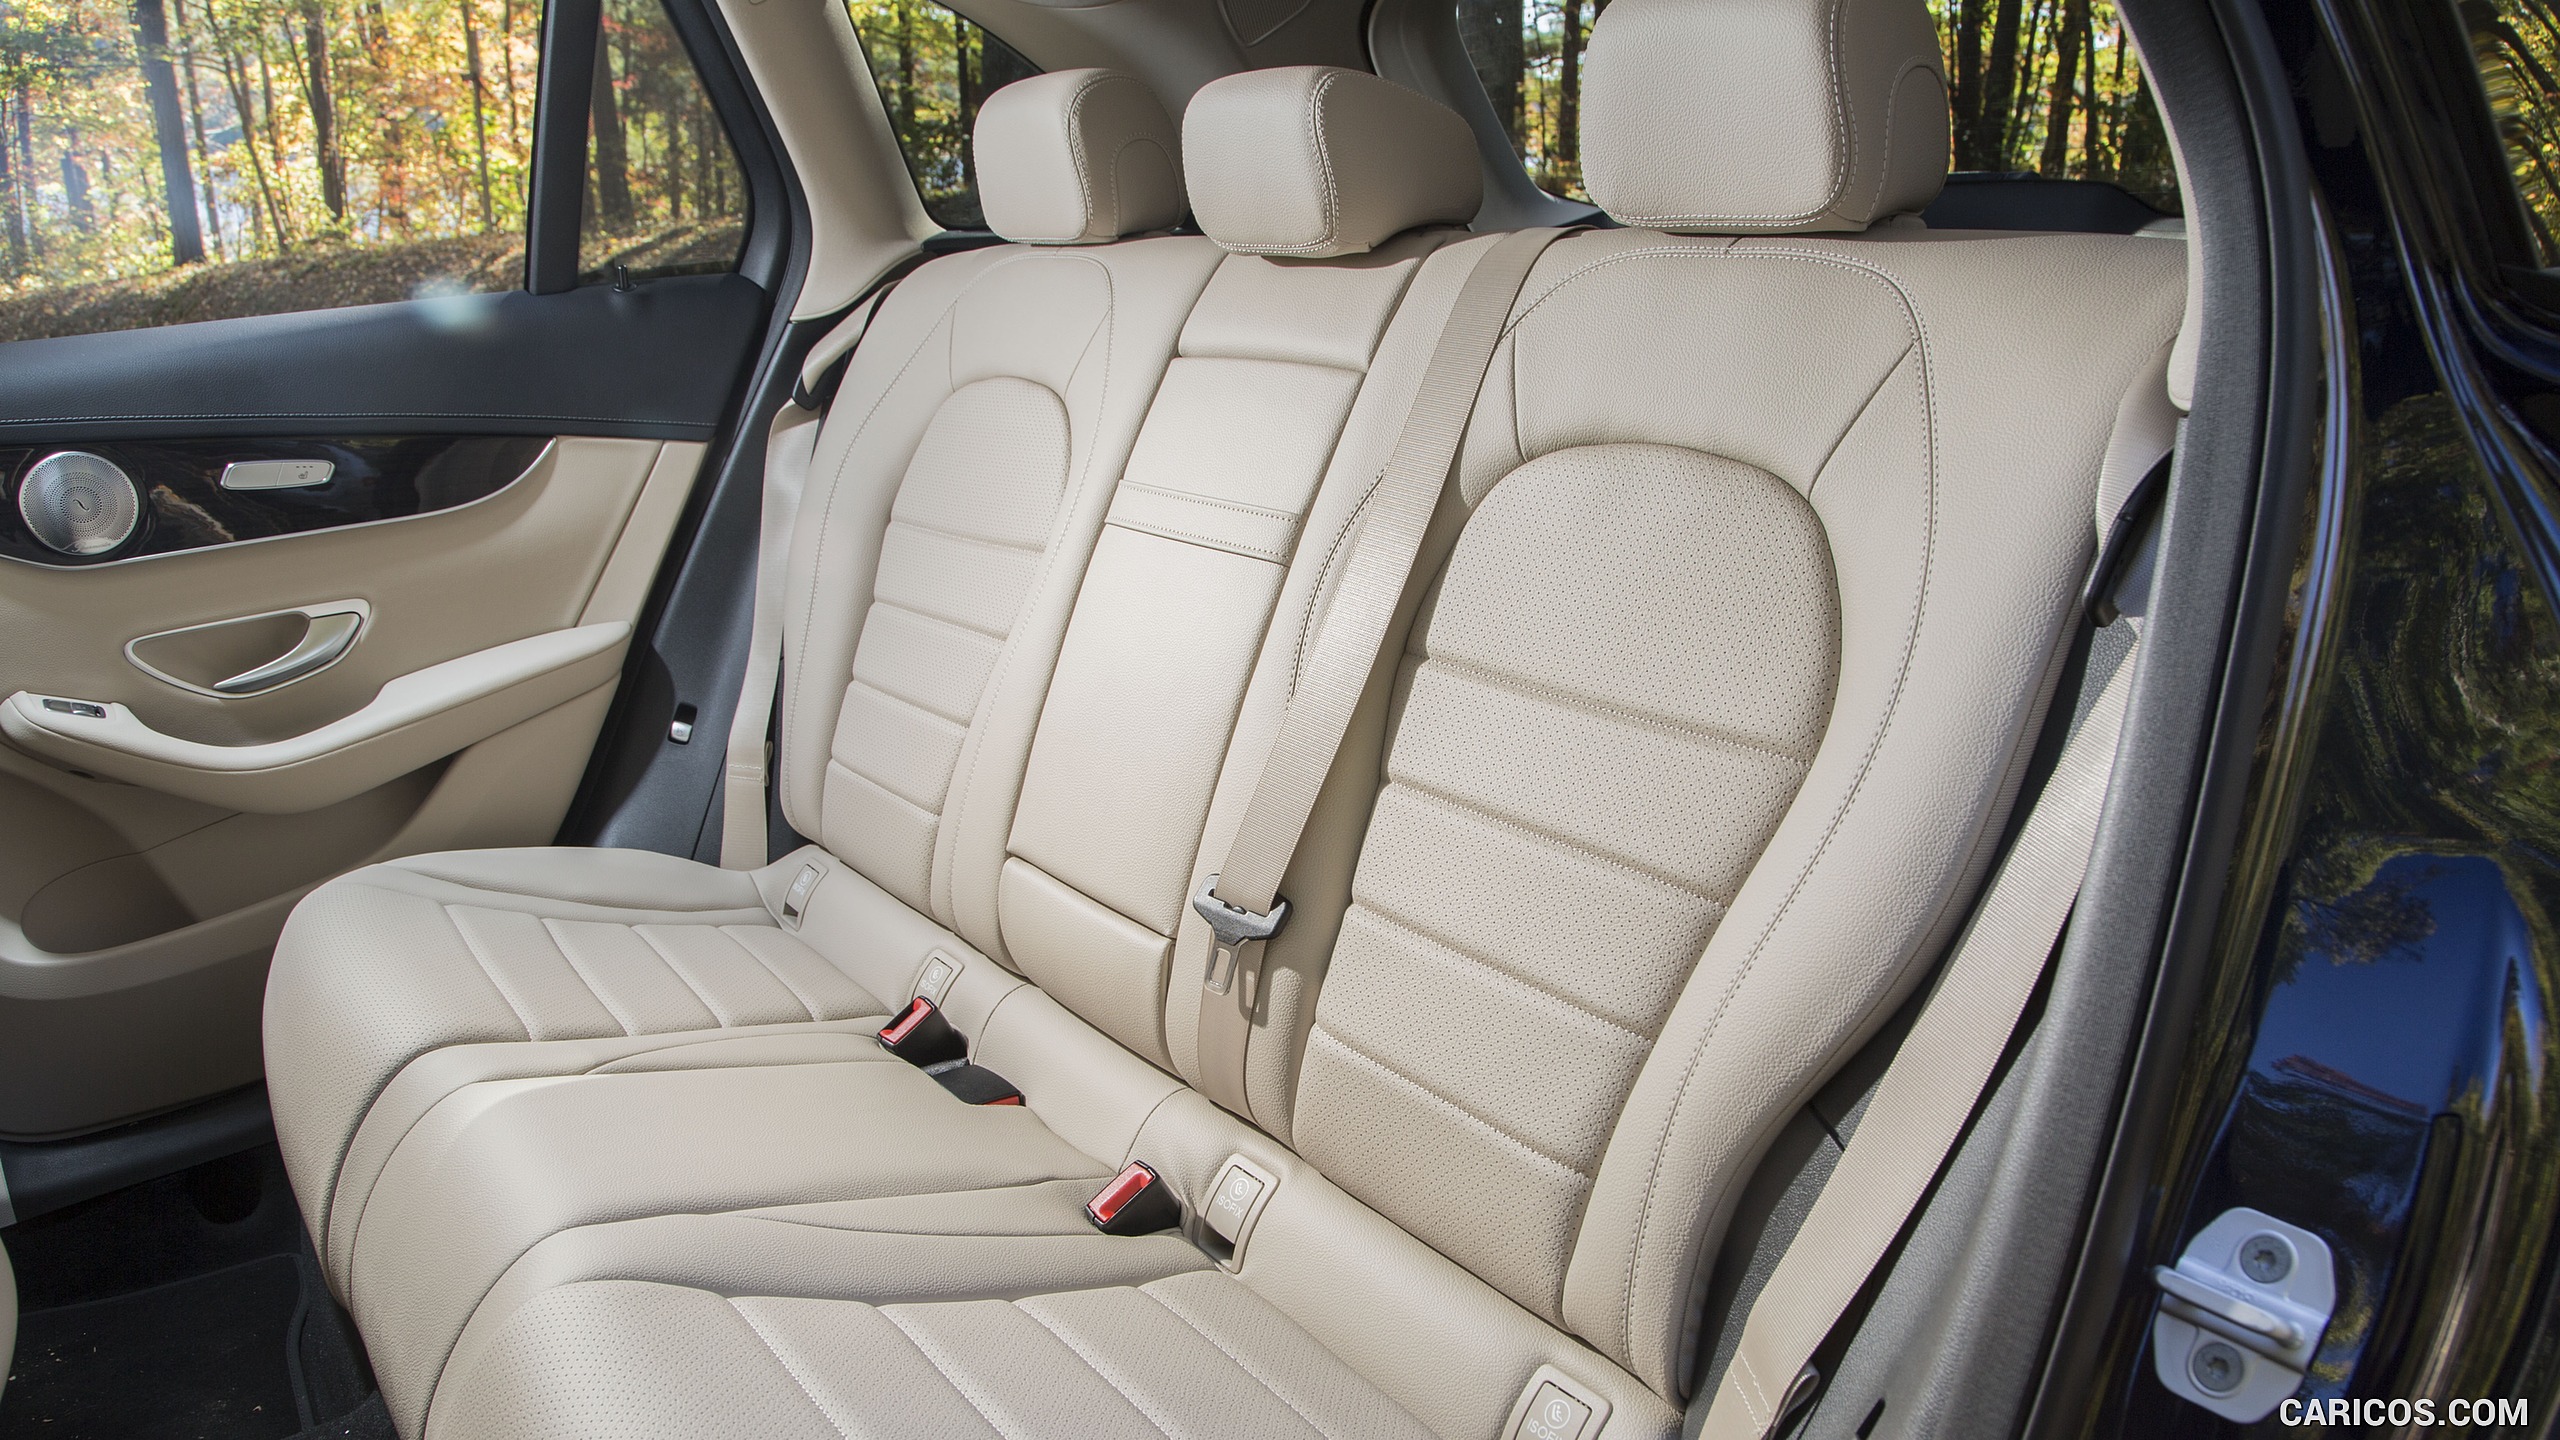 2016 Mercedes-Benz GLC GLC300 4MATIC (US-Spec) - Interior, Rear Seats, #97 of 180